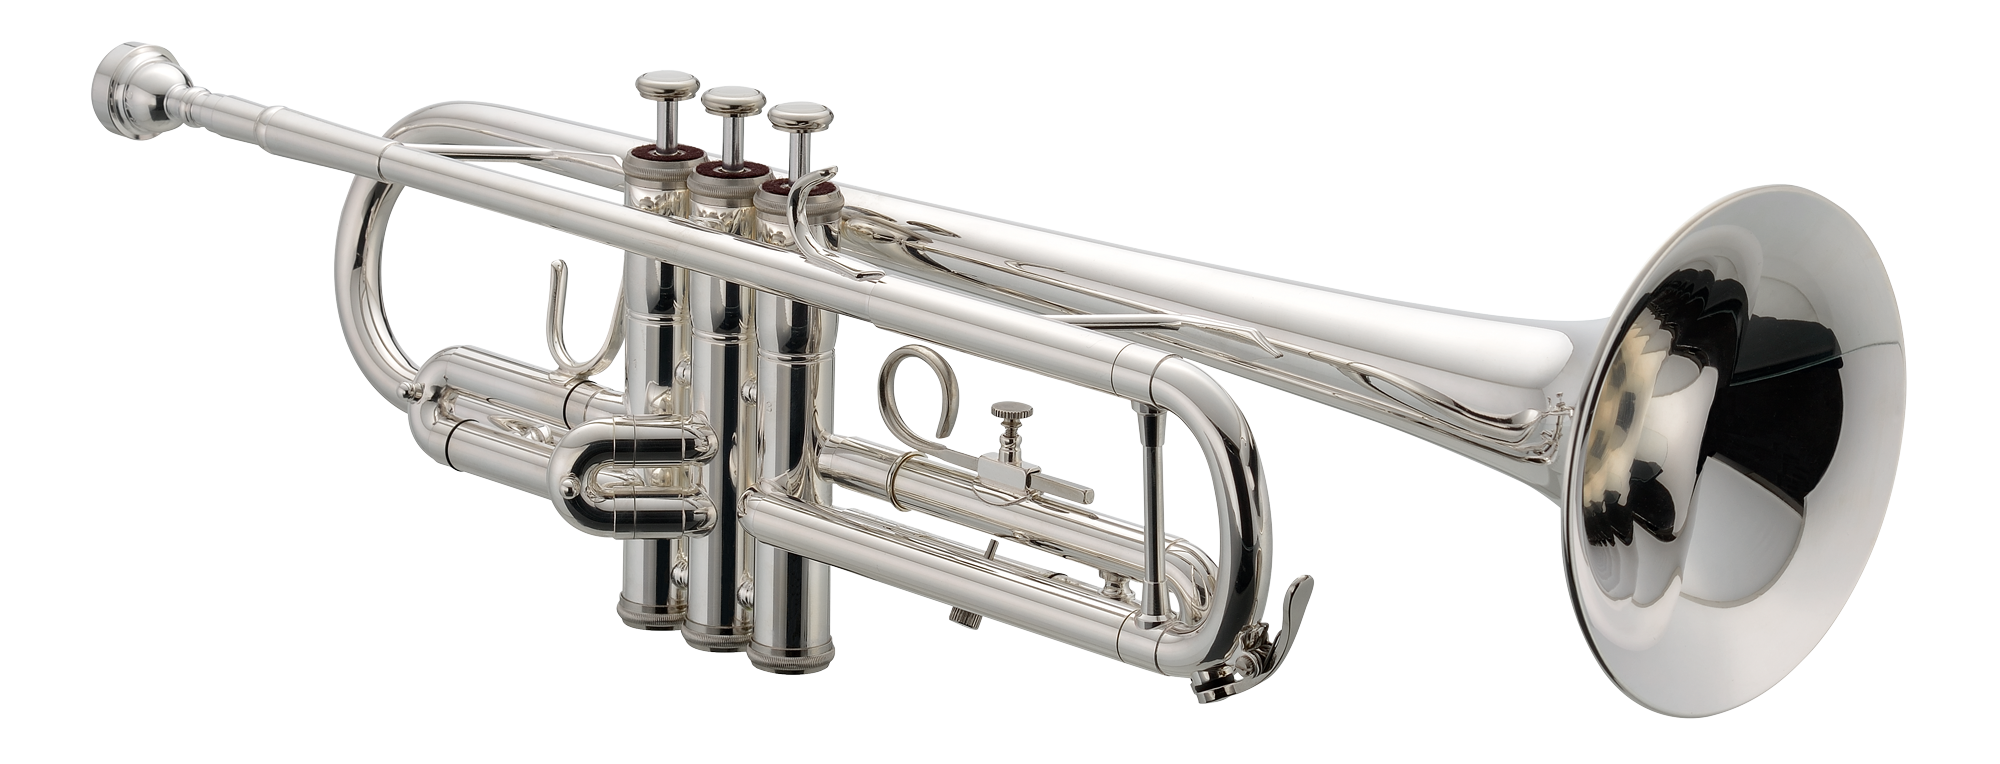 Jupiter Bb Trompet - JTR-700 RSQ